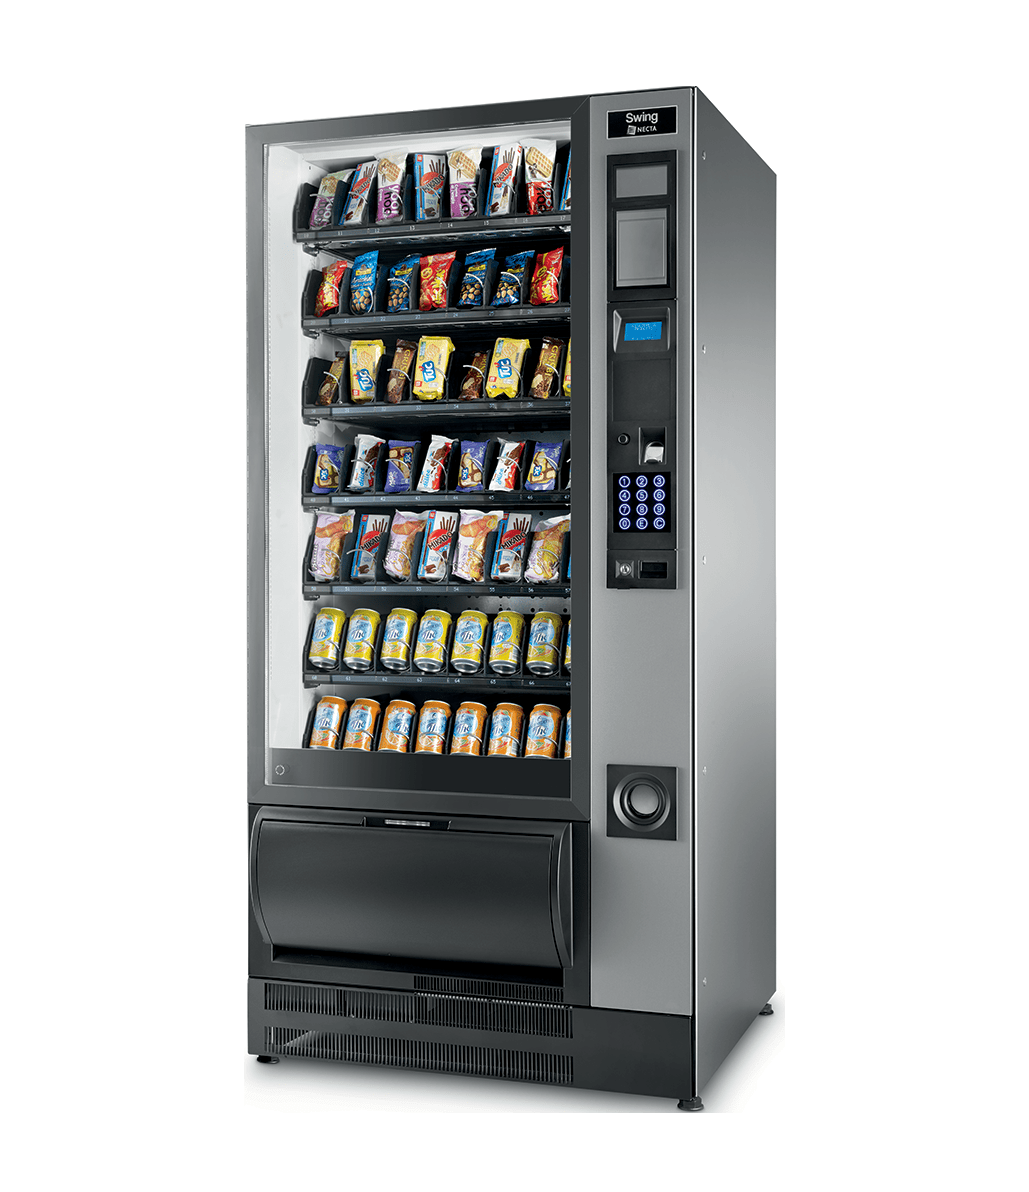 Vibrar Prueba lector Máquinas Expendedoras Bebidas y Snacks en Vitoria - Vending Ortun